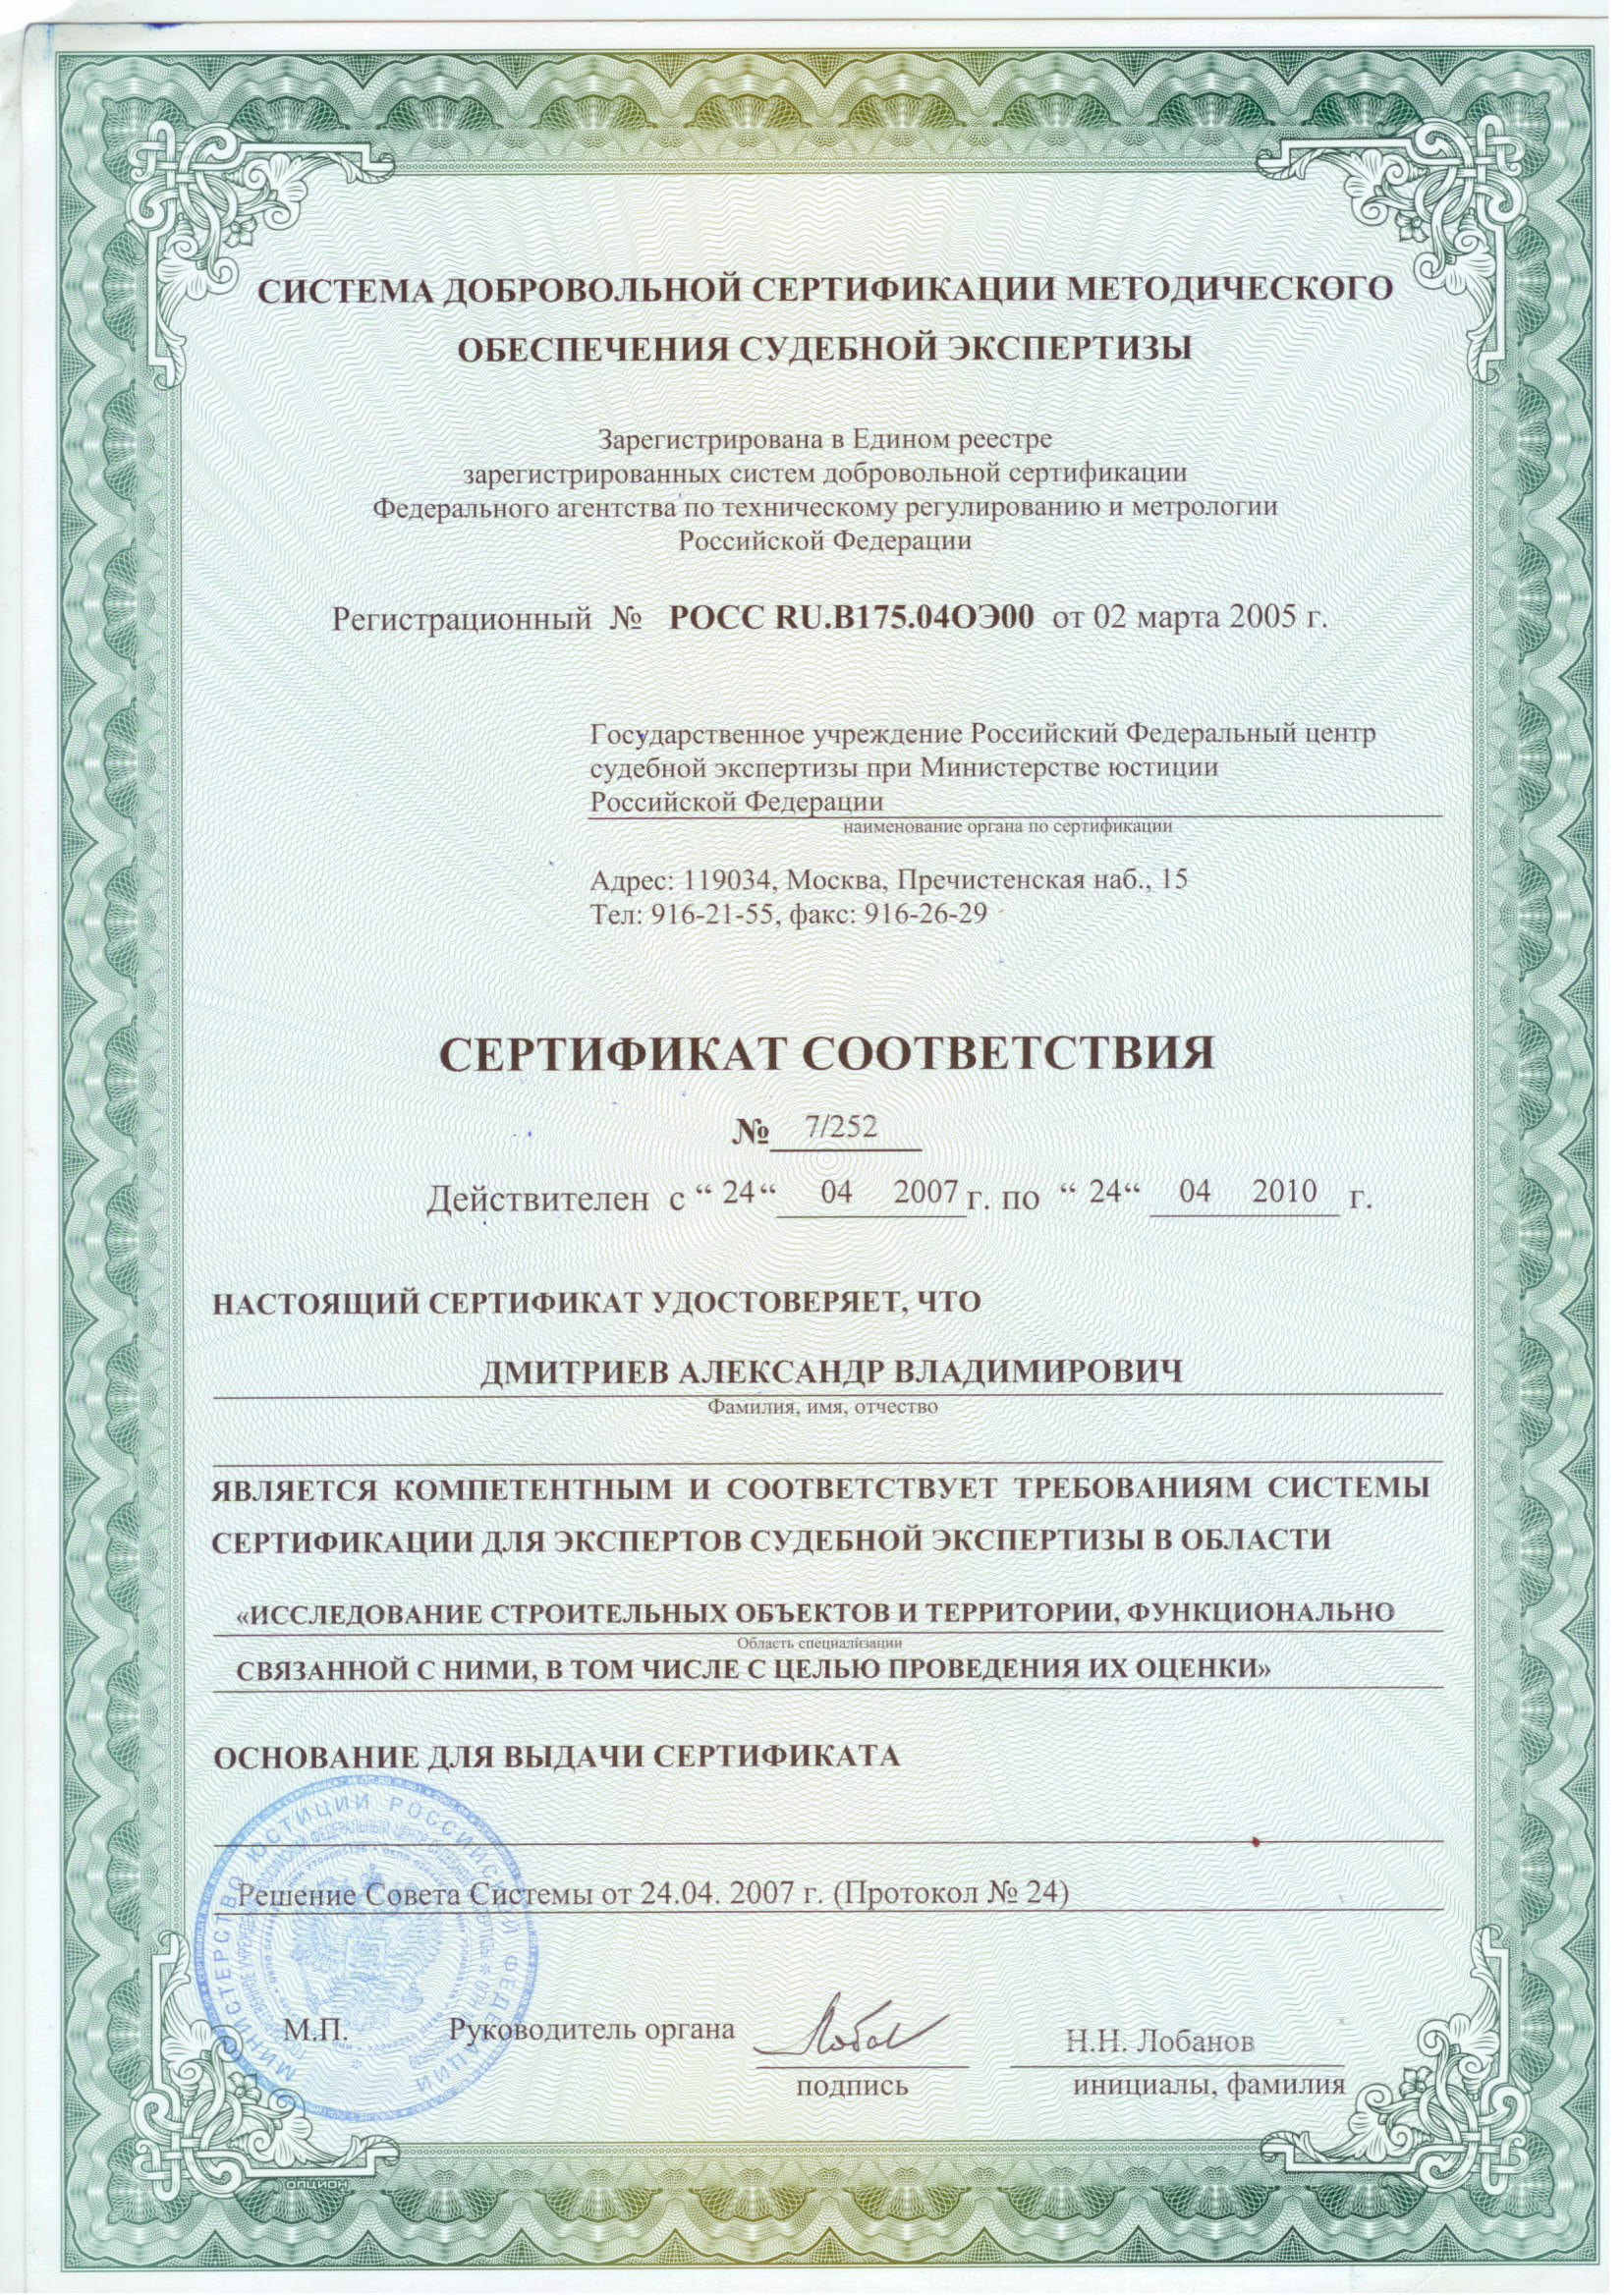 Сертификат судебного эксперта в области строительной экспертизы